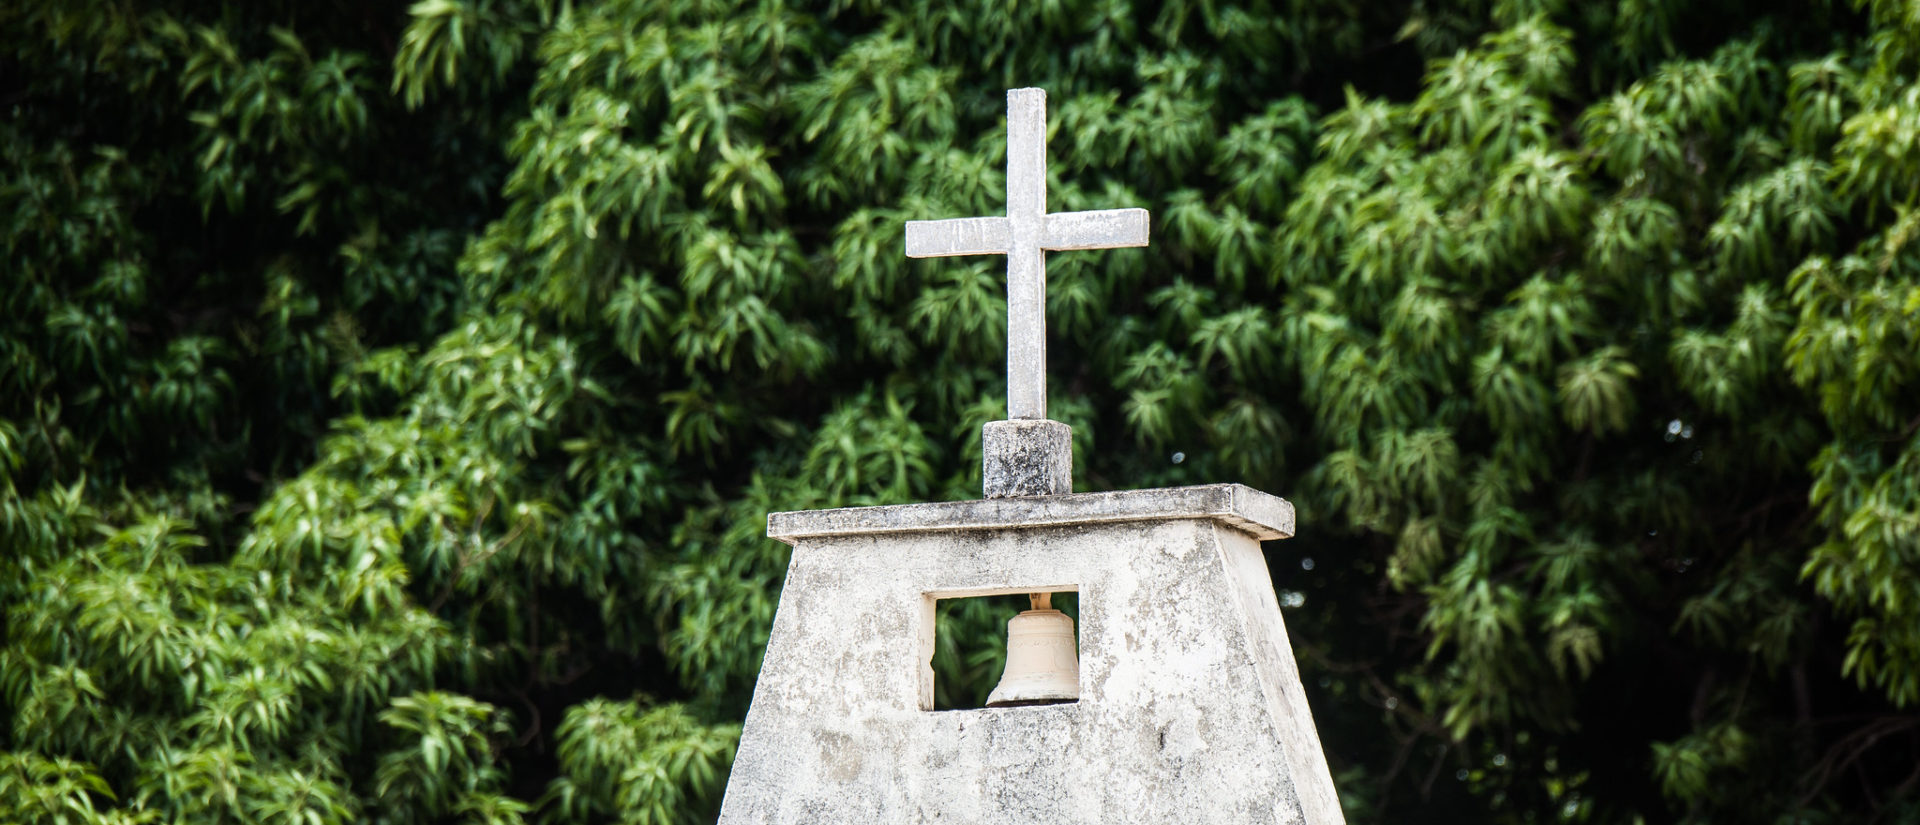 Quelles solutions pour l'Eglise en Amazonie? | © michael_swan/Flickr/CC BY-ND 2.0